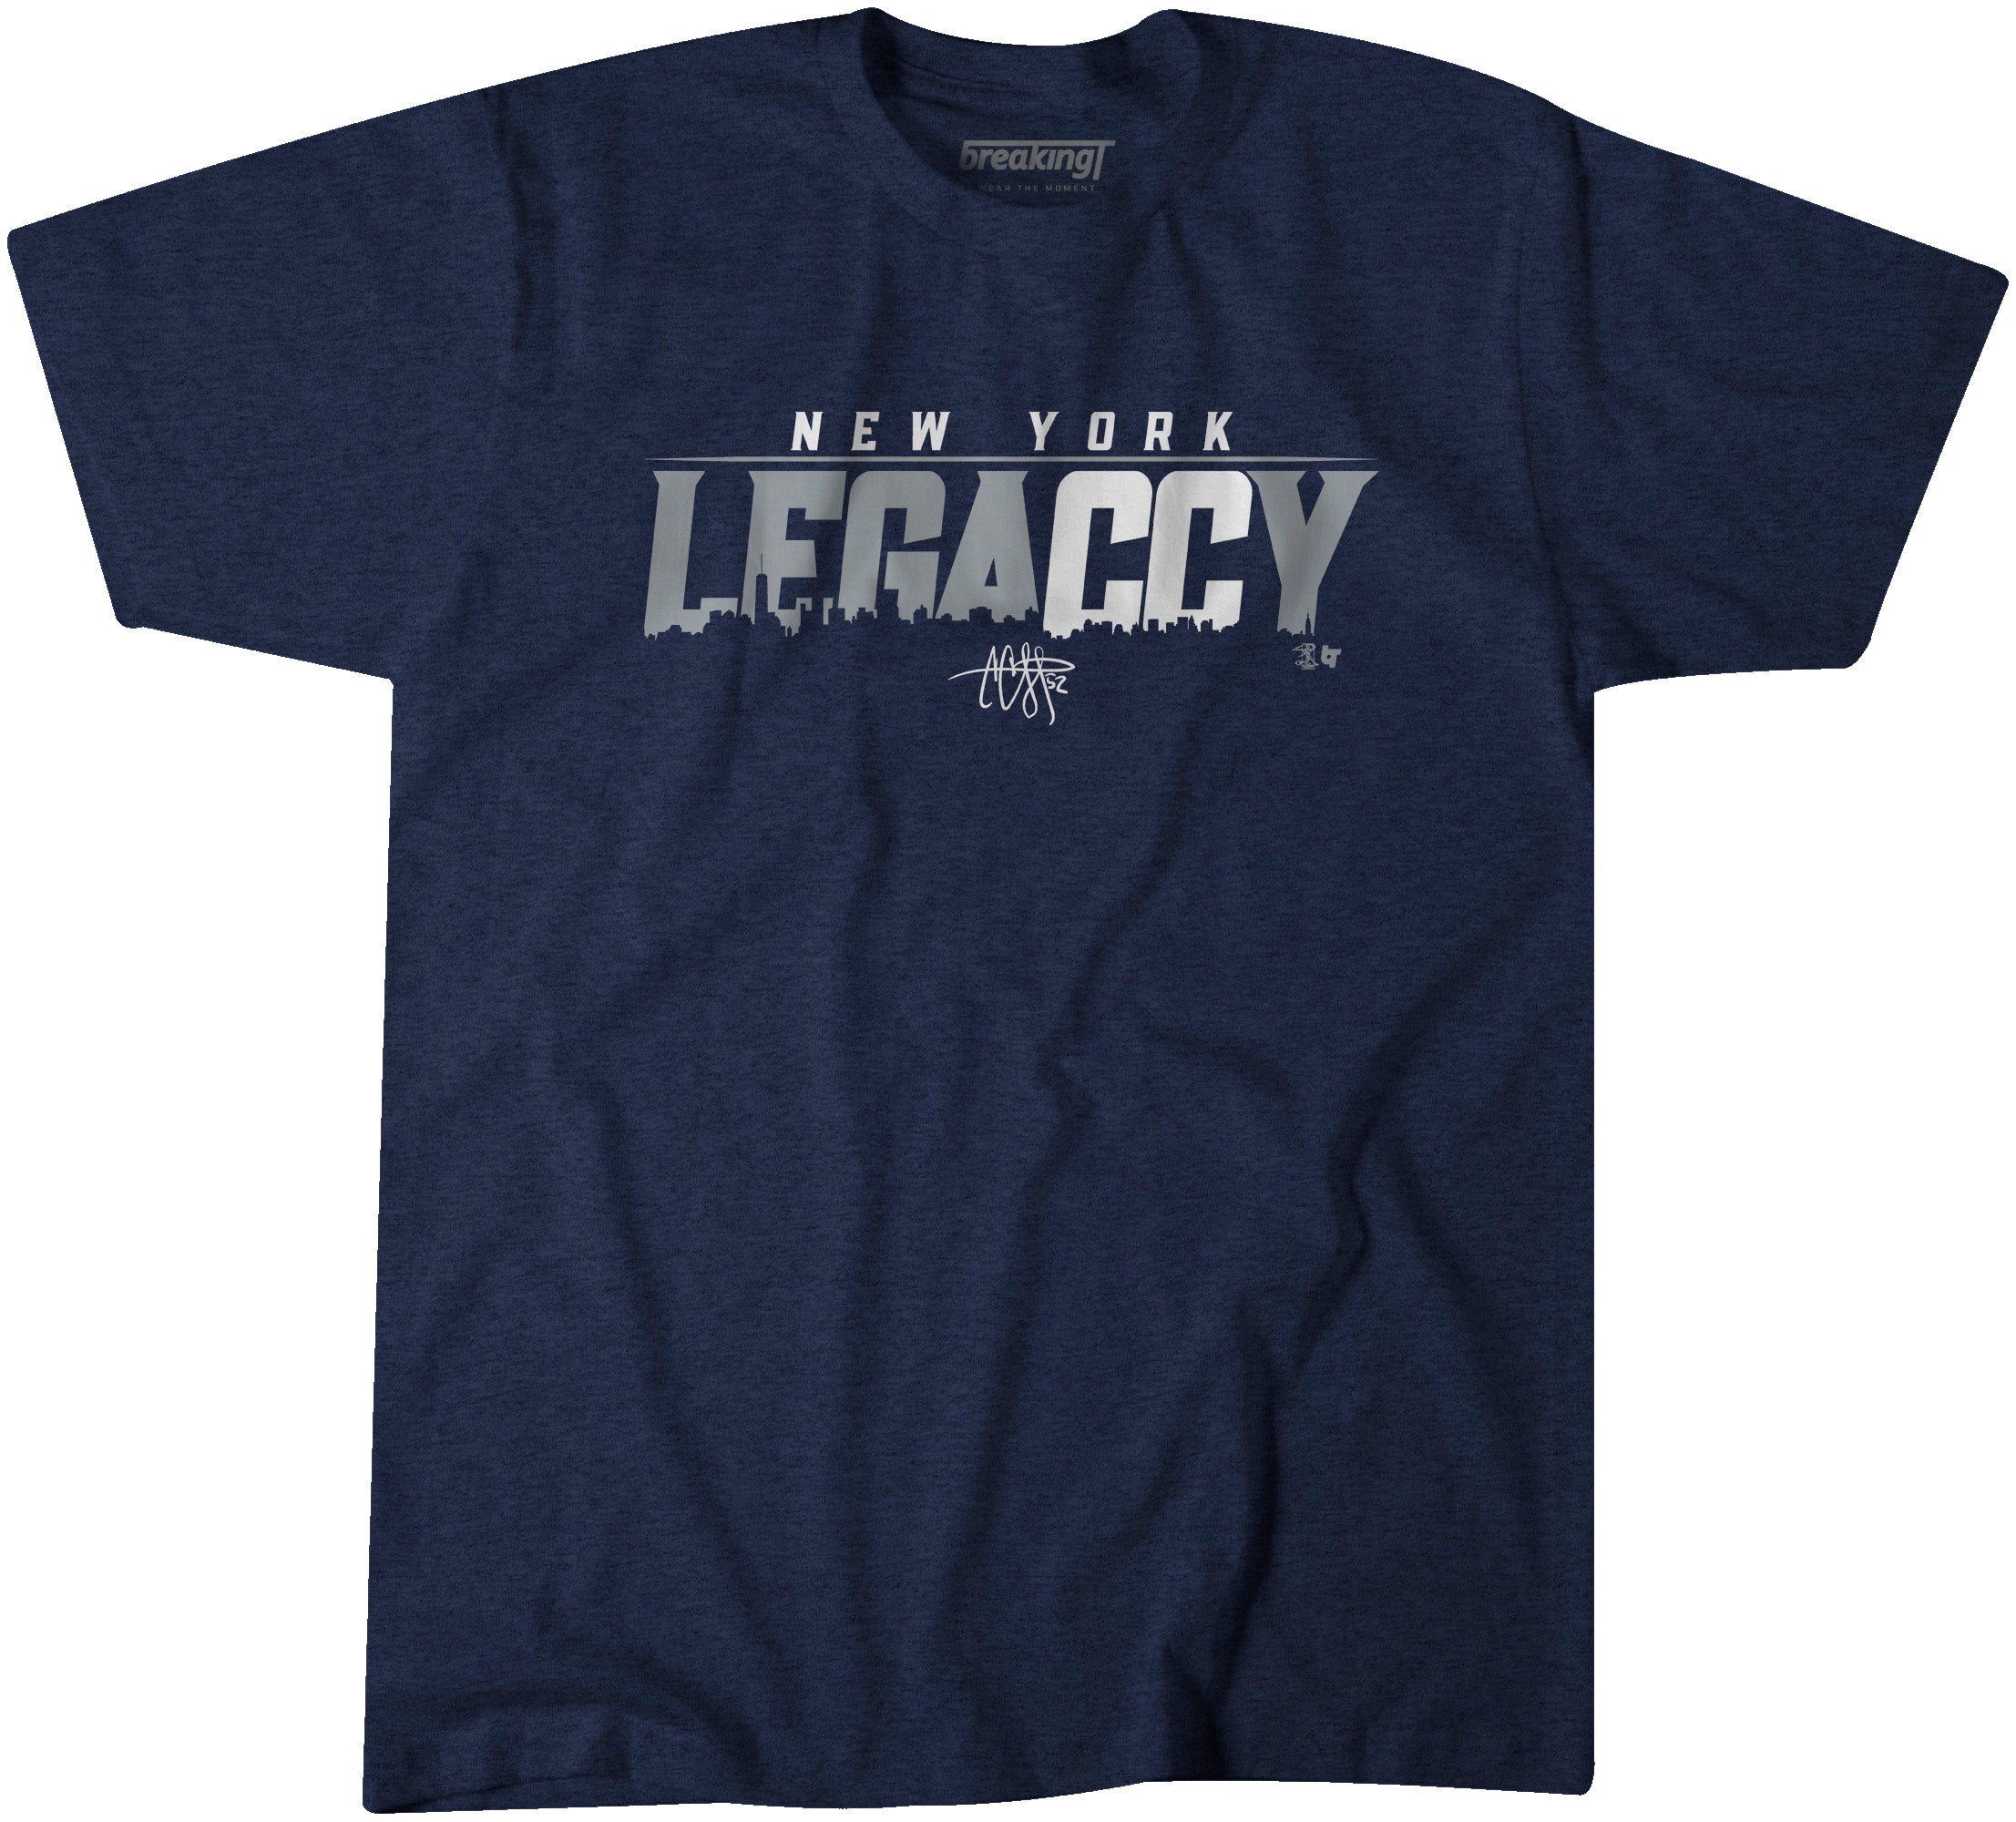 LegaCCy, Extra Large - MLB - Blue - Sports Fan Gear | breakingt